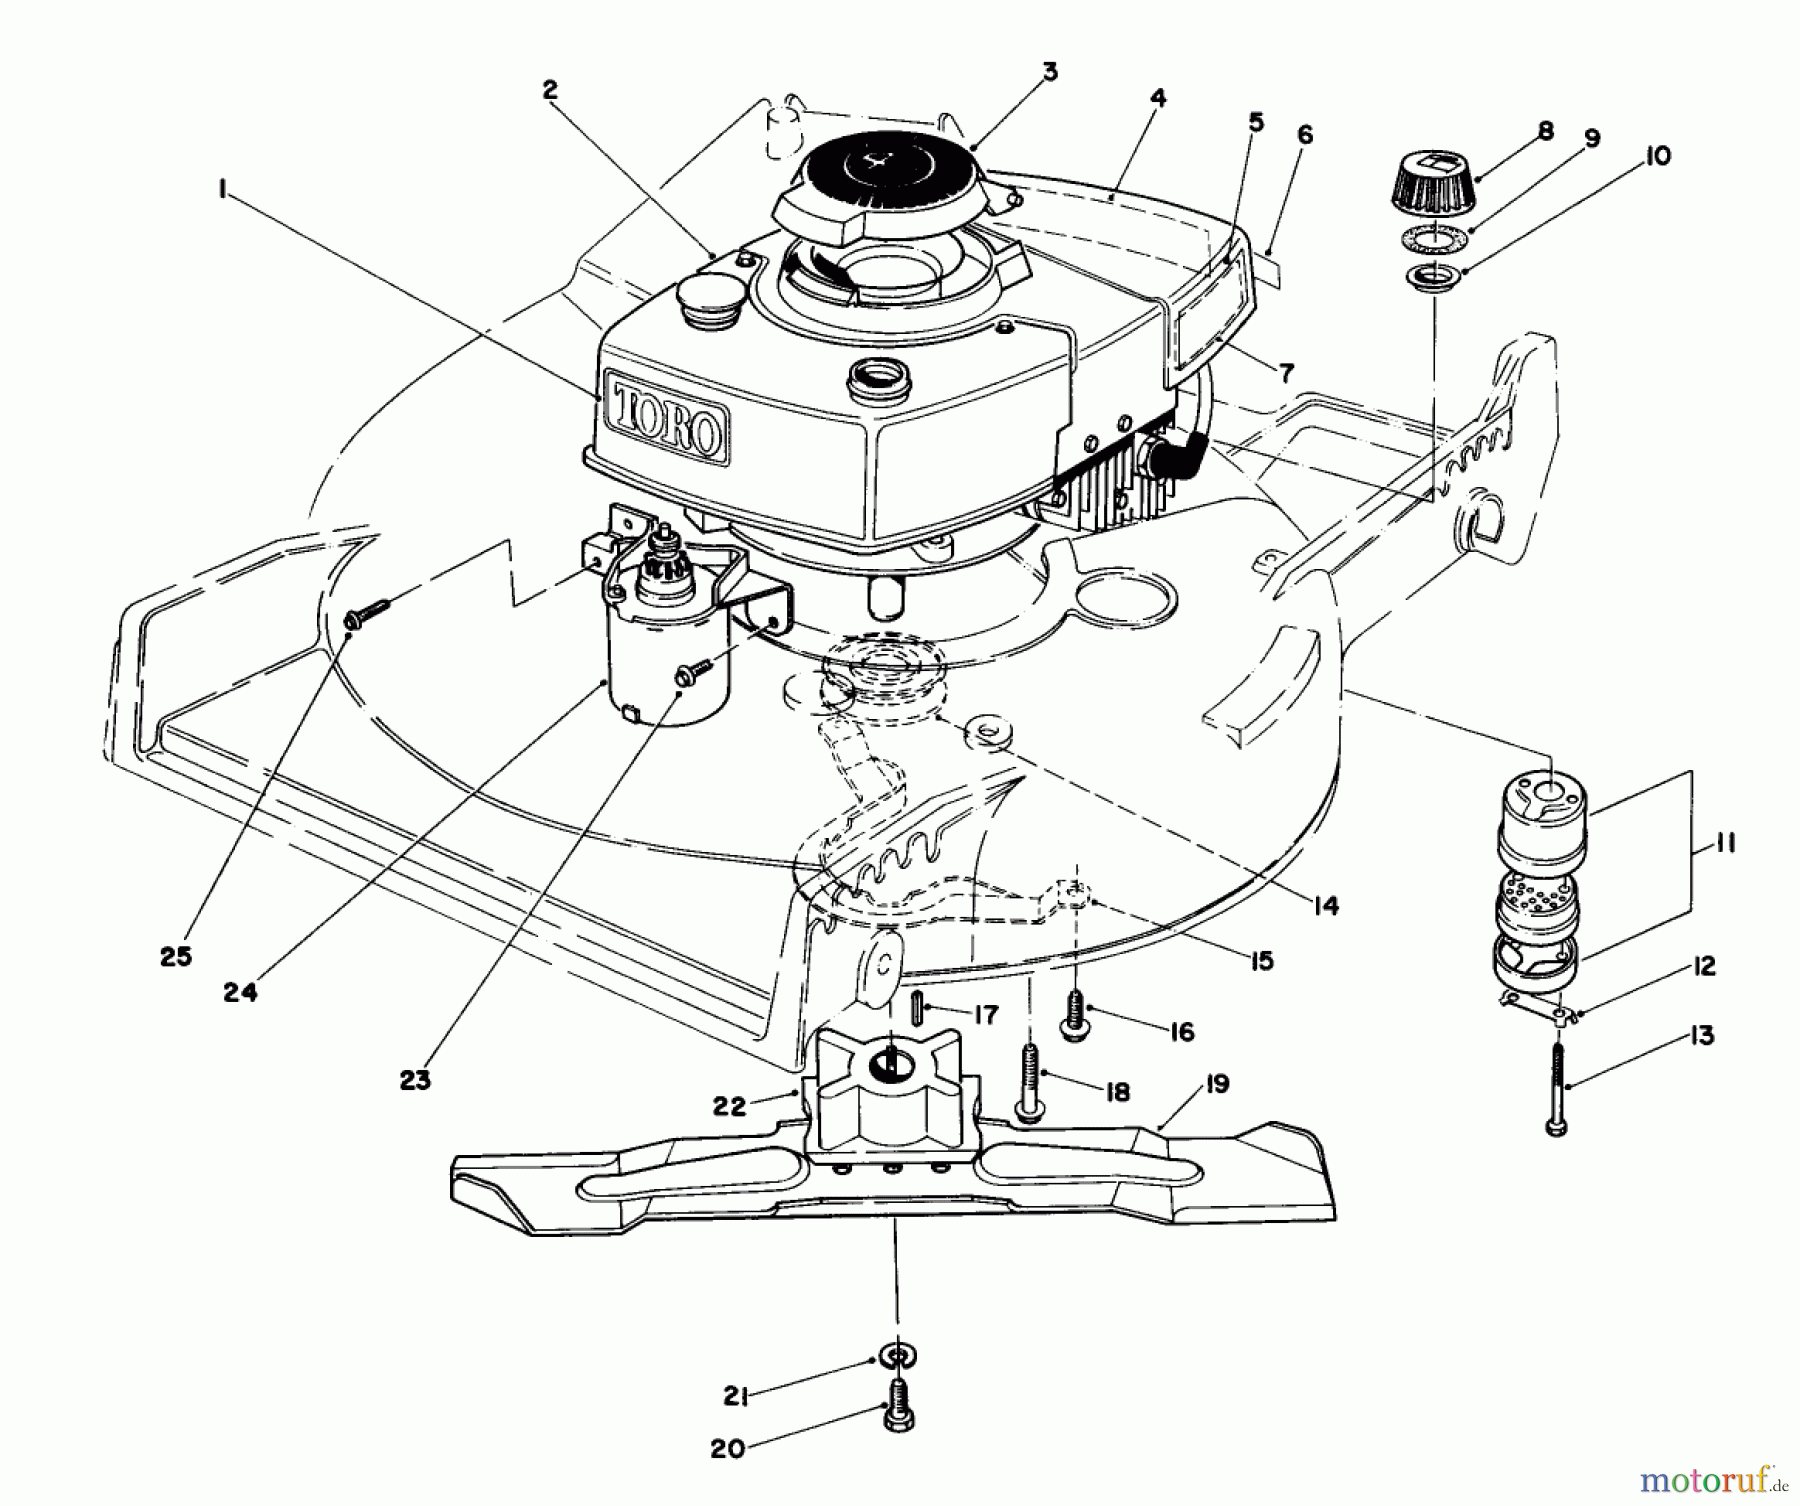  Toro Neu Mowers, Walk-Behind Seite 1 20715 - Toro Lawnmower, 1985 (5000001-5999999) ENGINE ASSEMBLY